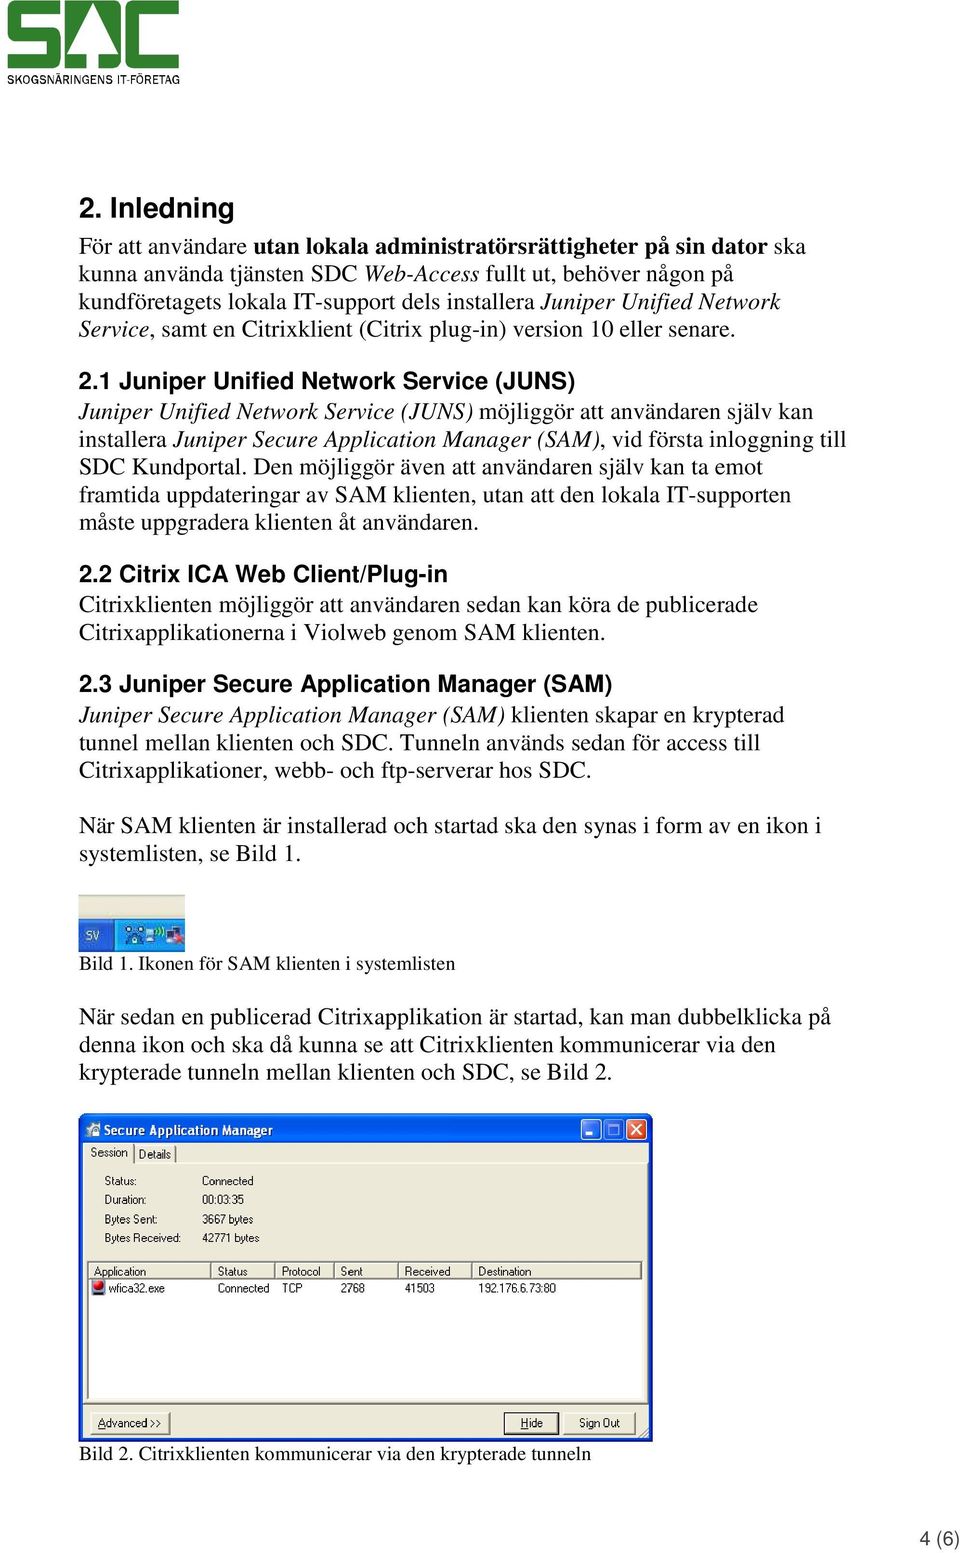 1 Juniper Unified Network Service (JUNS) Juniper Unified Network Service (JUNS) möjliggör att användaren själv kan installera Juniper Secure Application Manager (SAM), vid första inloggning till SDC